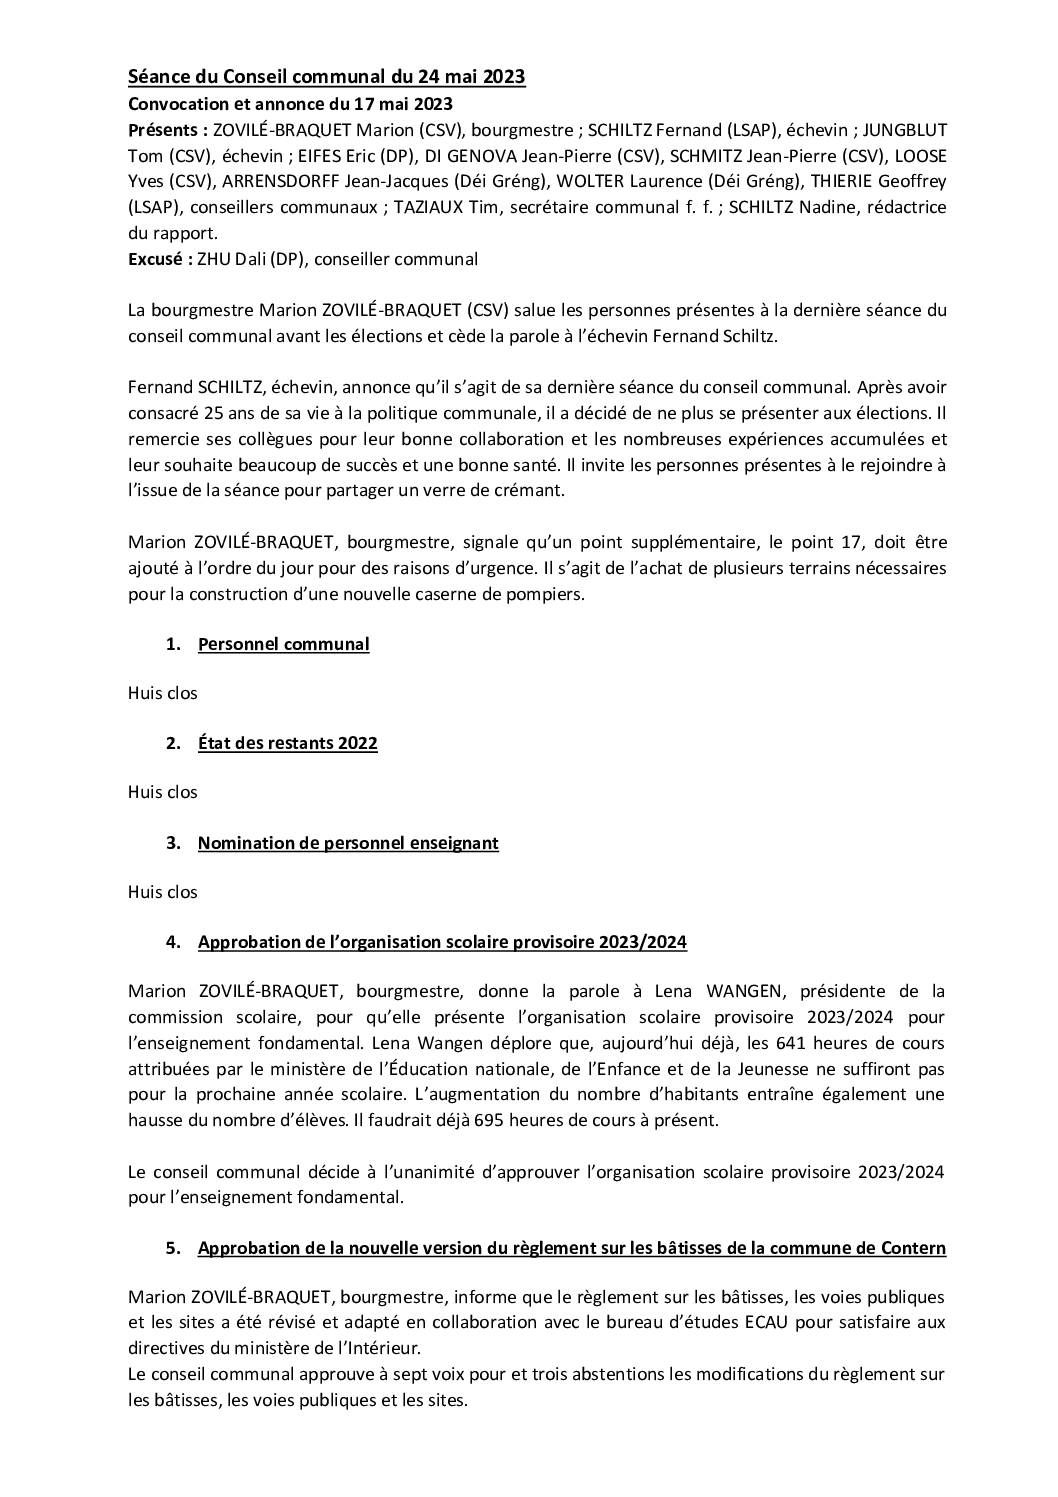 2023-05-24-Rapport-du-Conseil-communal